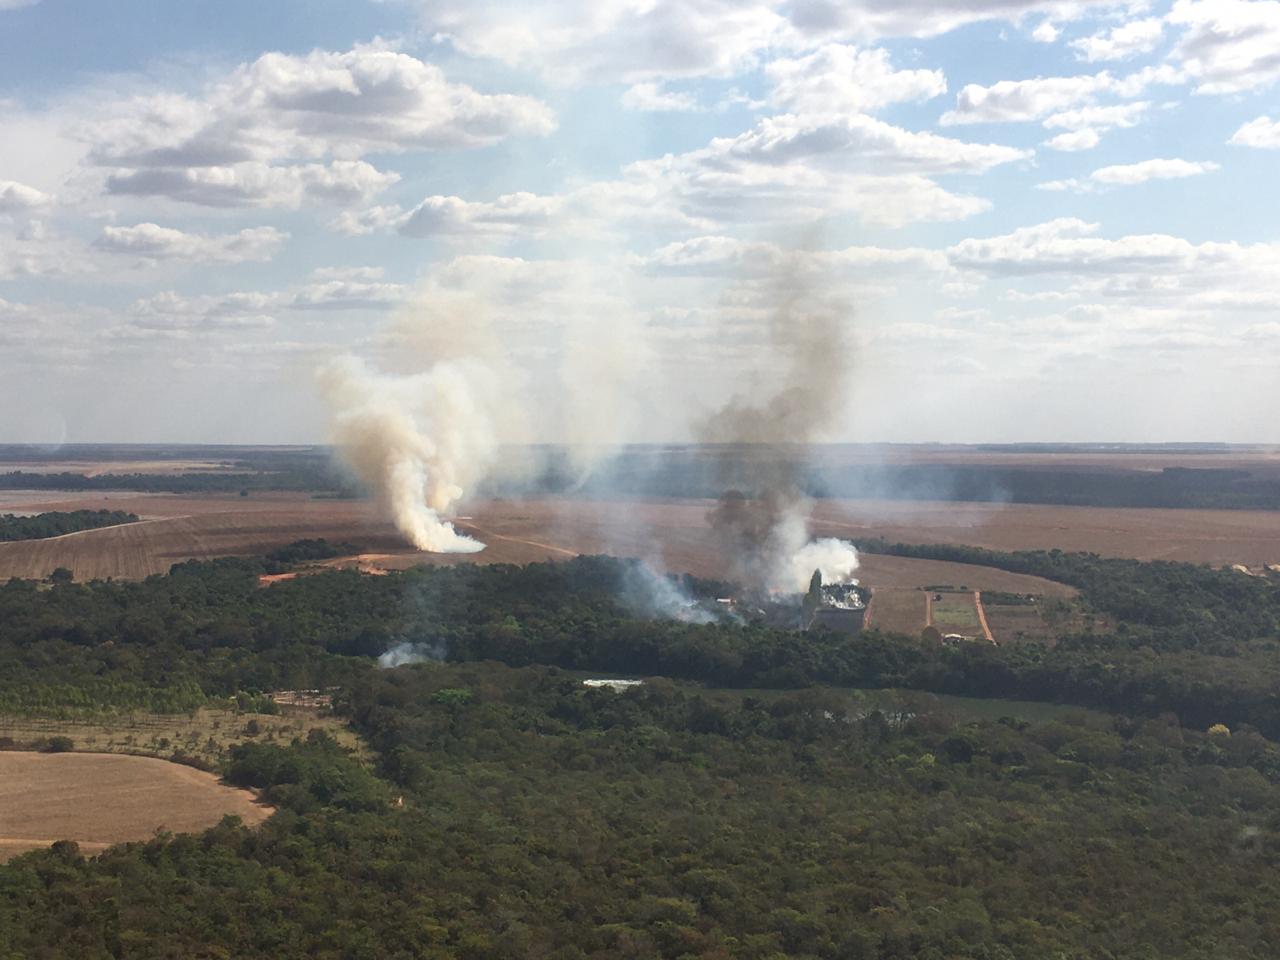 Incêndio Florestal atinge 17 hectares e é combatido em ação conjunta